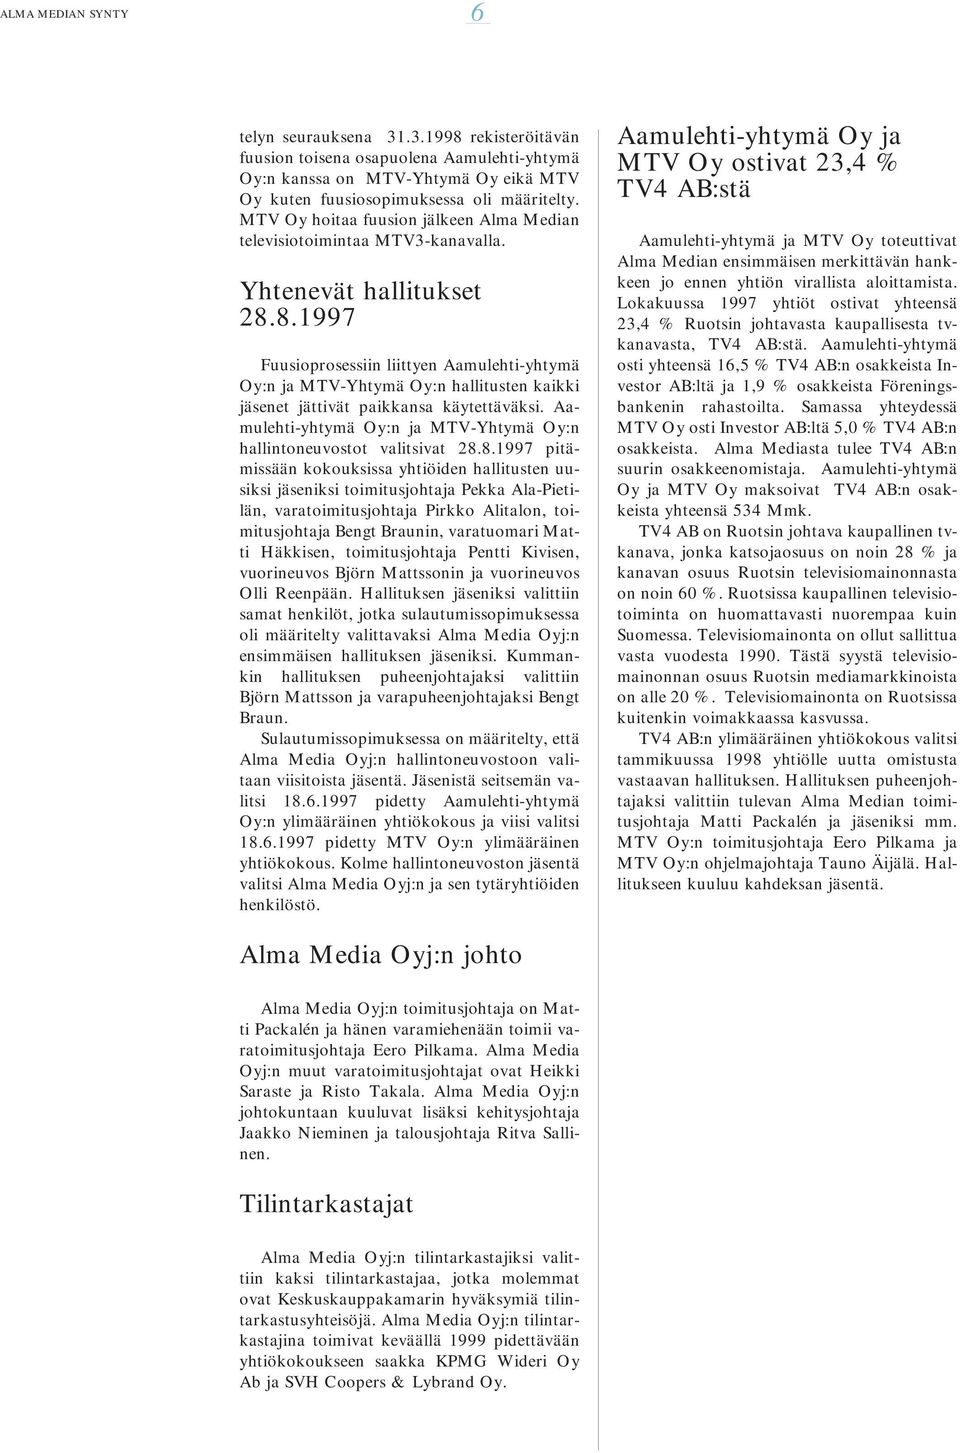 8.1997 Fuusioprosessiin liittyen Aamulehti-yhtymä Oy:n ja MTV-Yhtymä Oy:n hallitusten kaikki jäsenet jättivät paikkansa käytettäväksi.